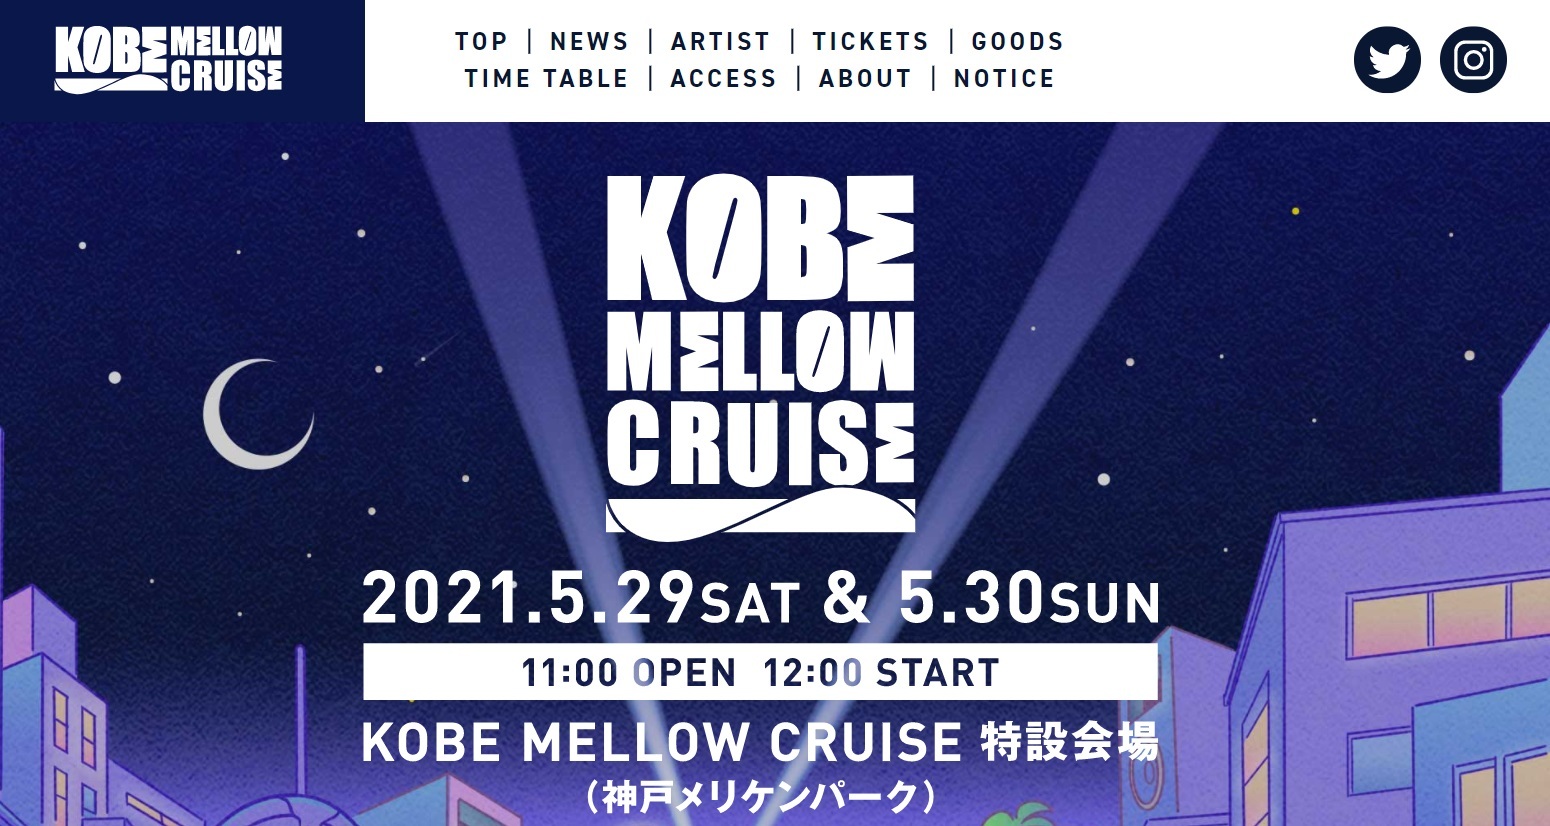 『KOBE MELLOW CRUISE 2021』公式サイトのスクリーンショット